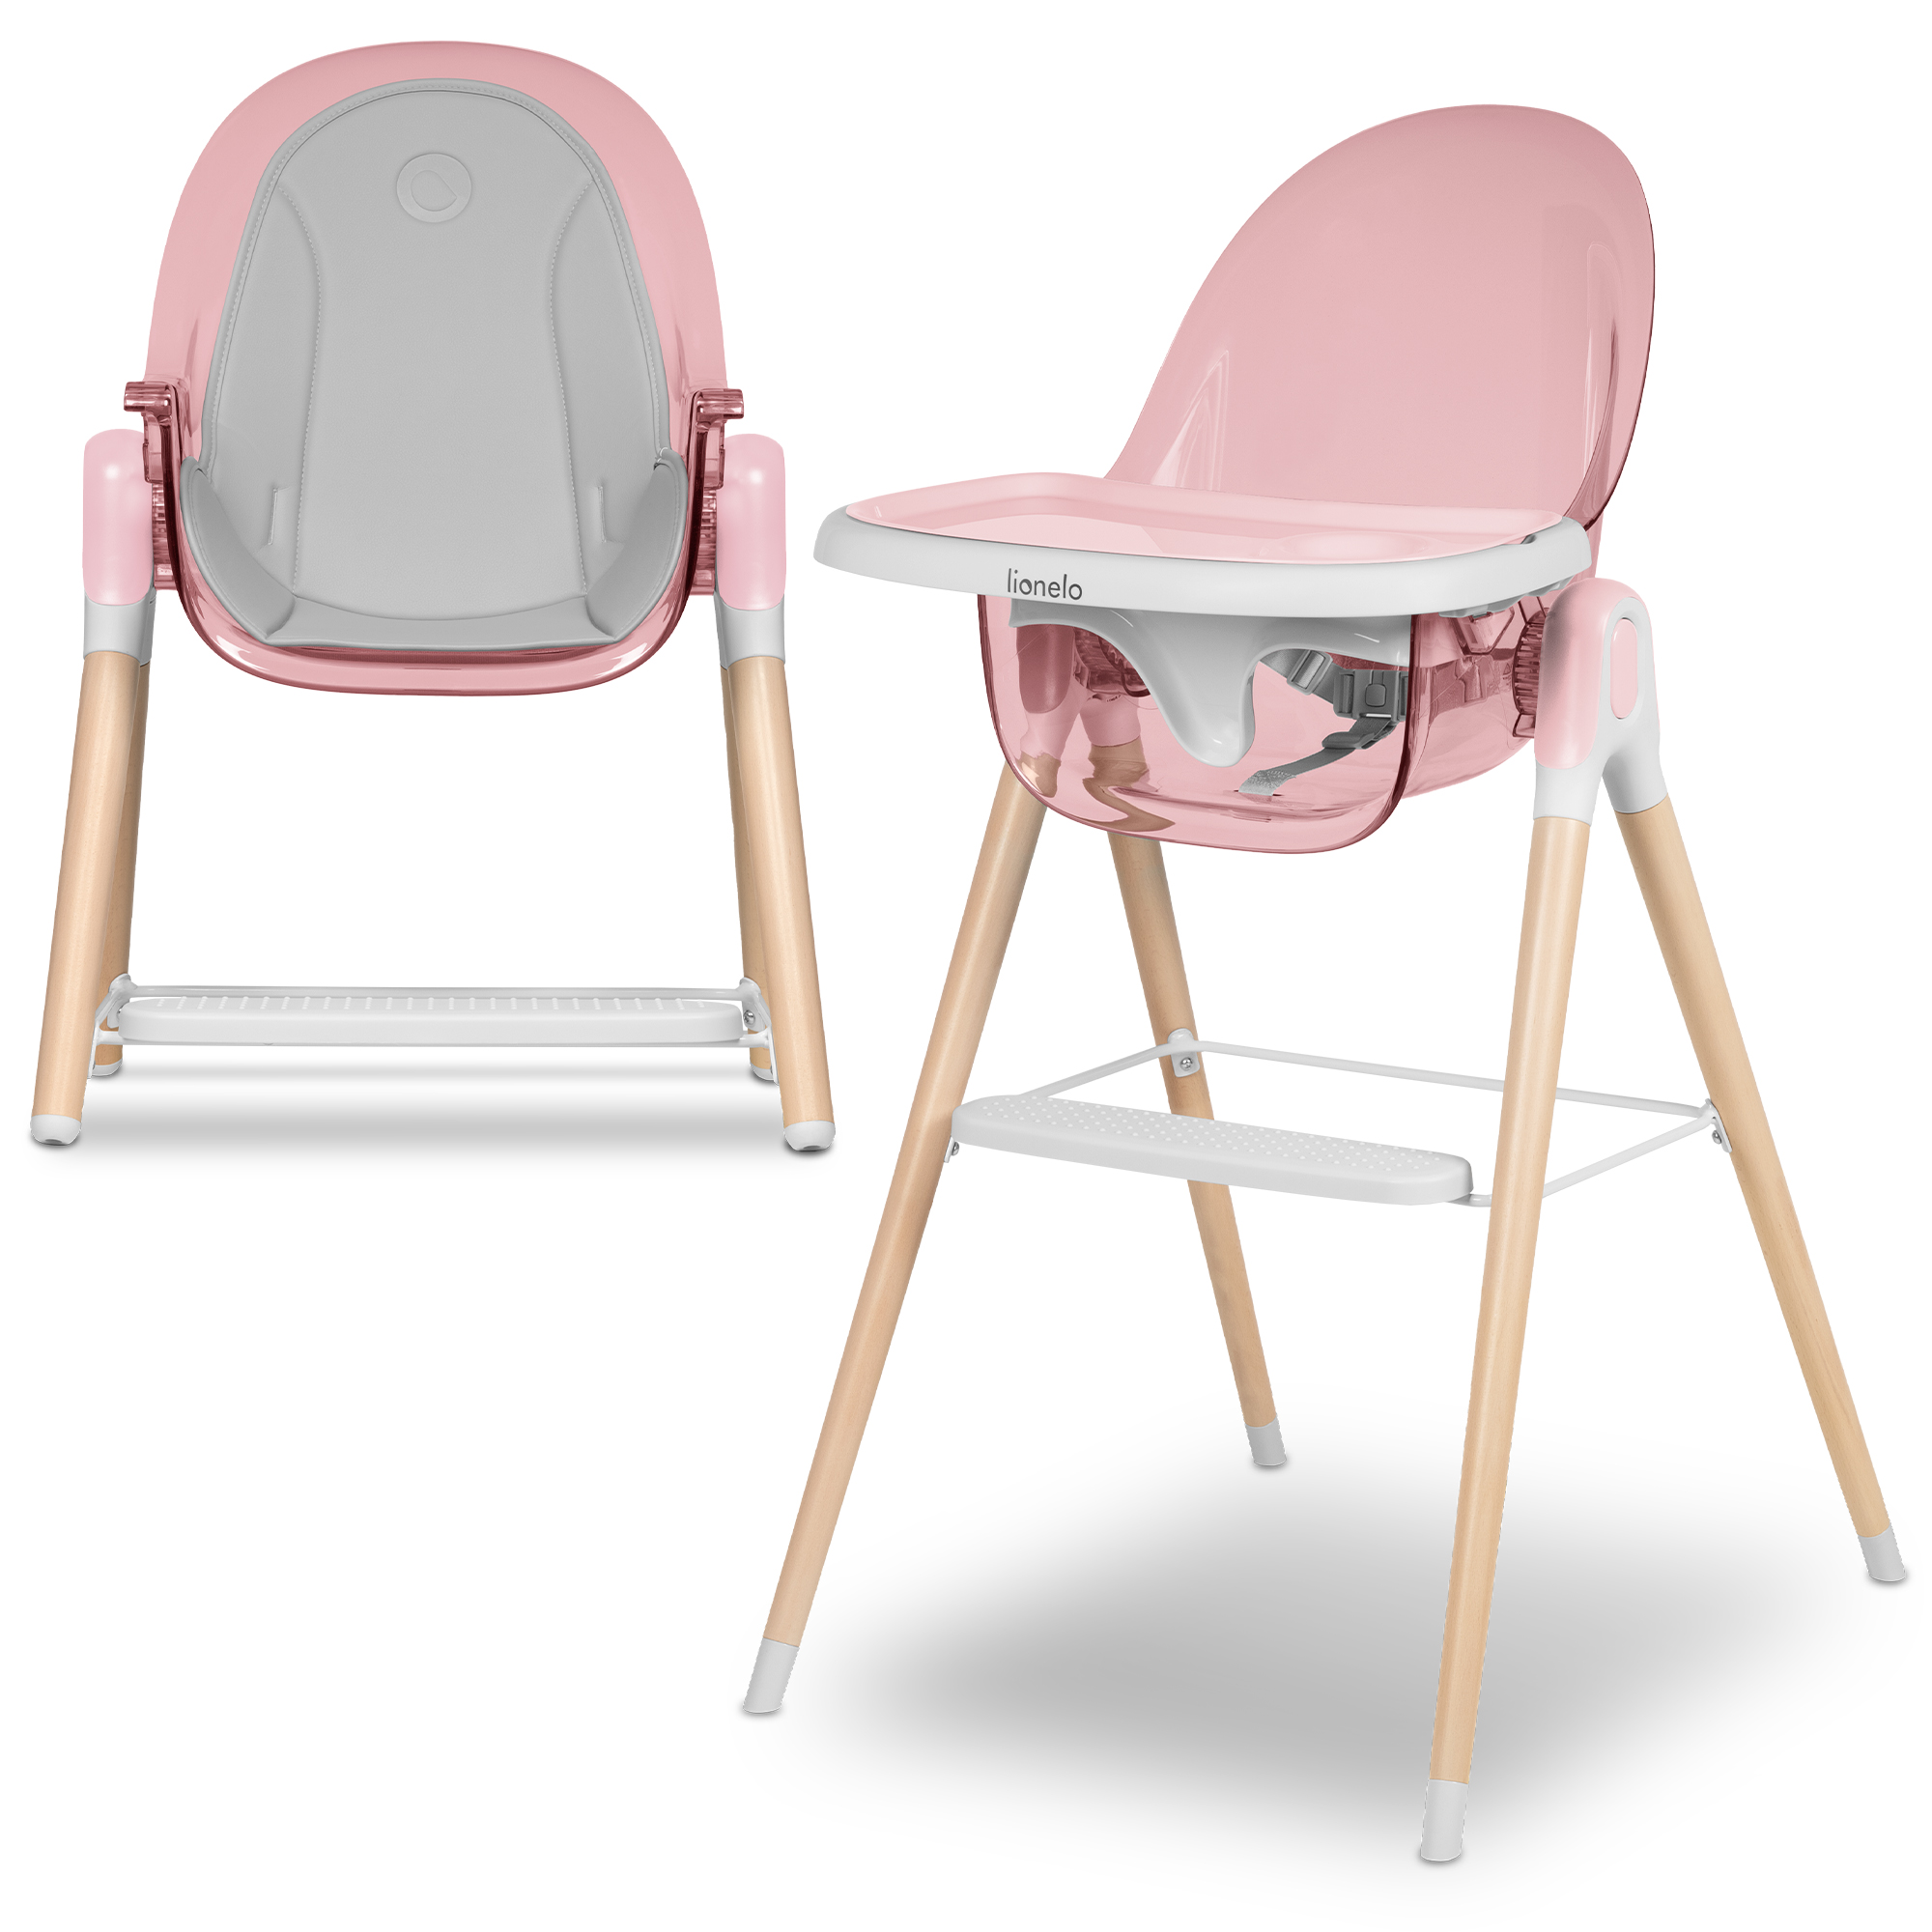 Blanc Lionelo Maya chaise haute pour bébé jusquà 25 kg réglage du dossier plateau réglable repose-pieds ceintures de sécurité à 3 points design scandinave 